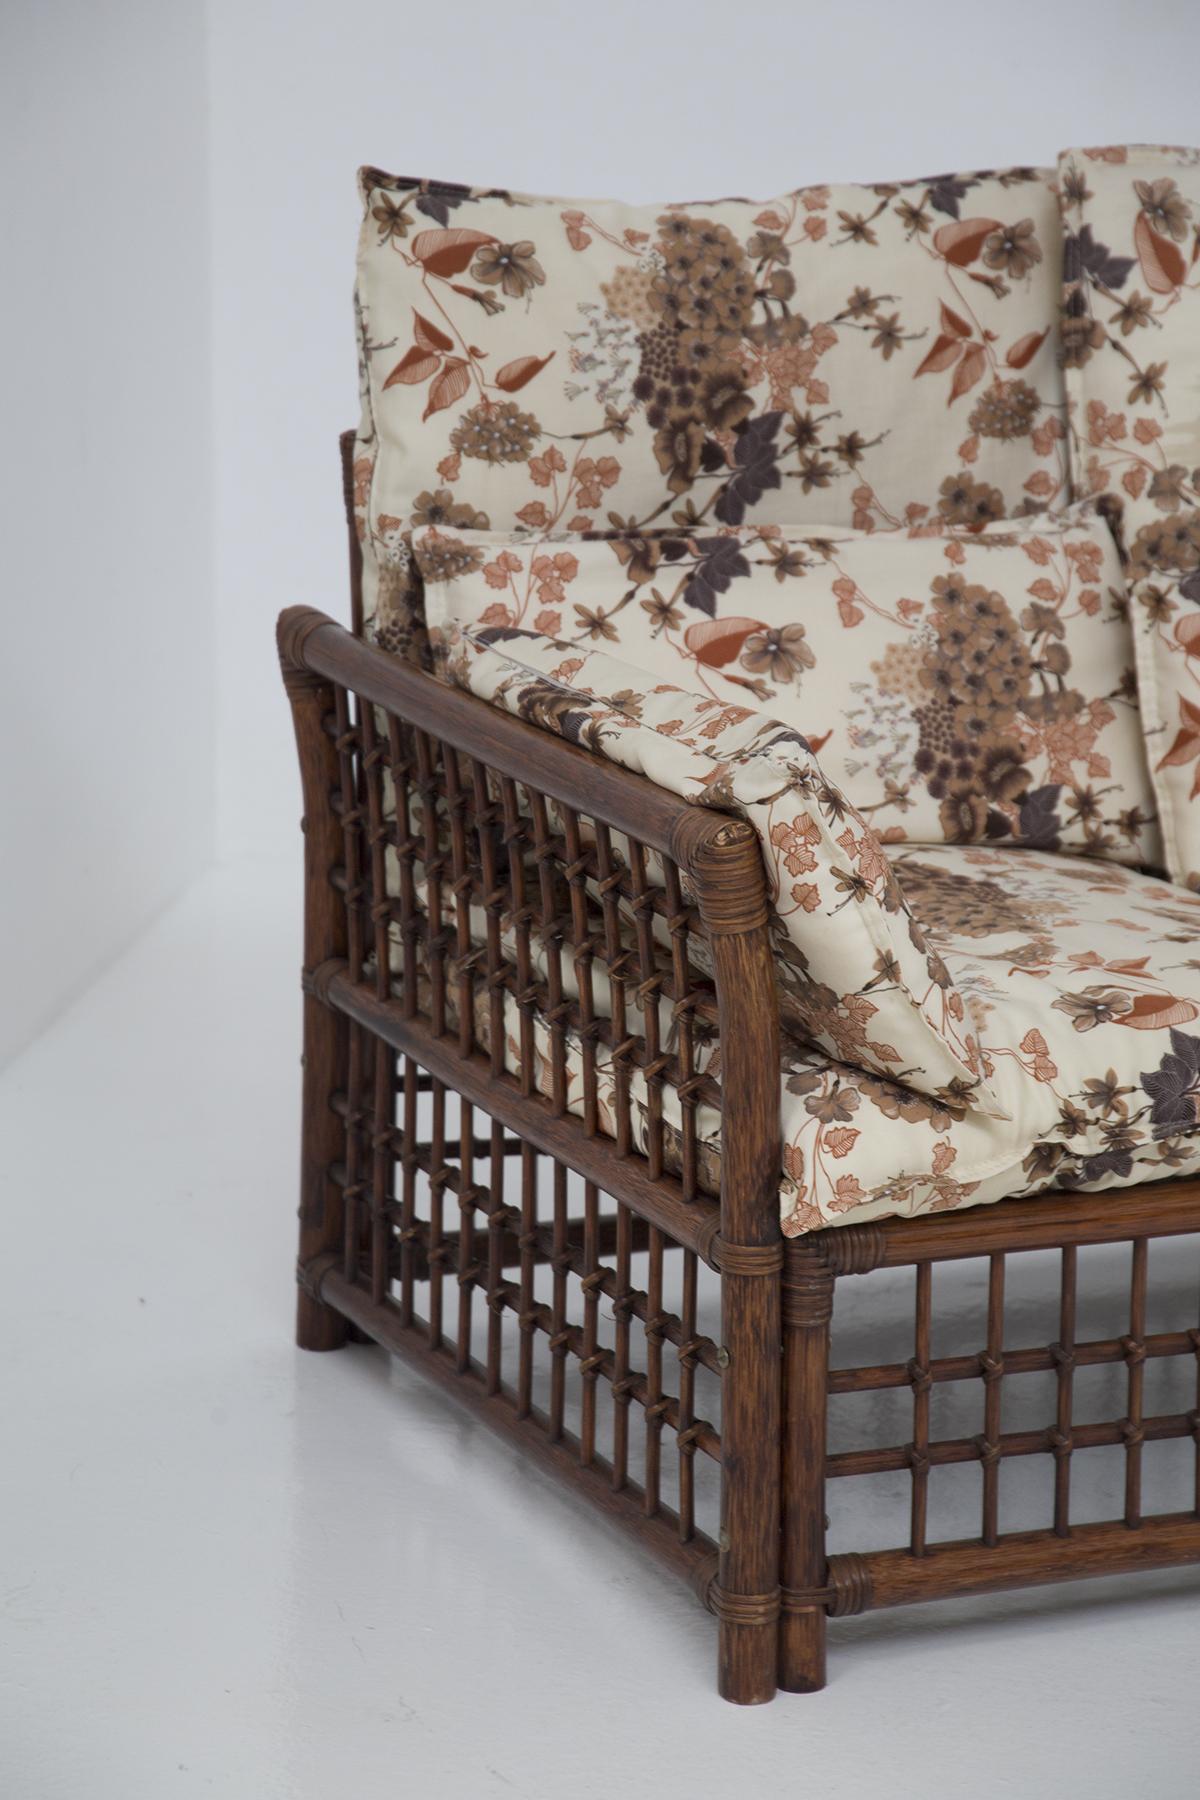 Wunderschönes Sofa aus Rattan und Holz, entworfen in den 1960er Jahren vom italienischen Hersteller Vivai Del Sud.
Das Sofa ist wunderbar, mit einer quadratischen Form mit geometrischen und sehr harten Linien.
Die tragende Struktur besteht aus